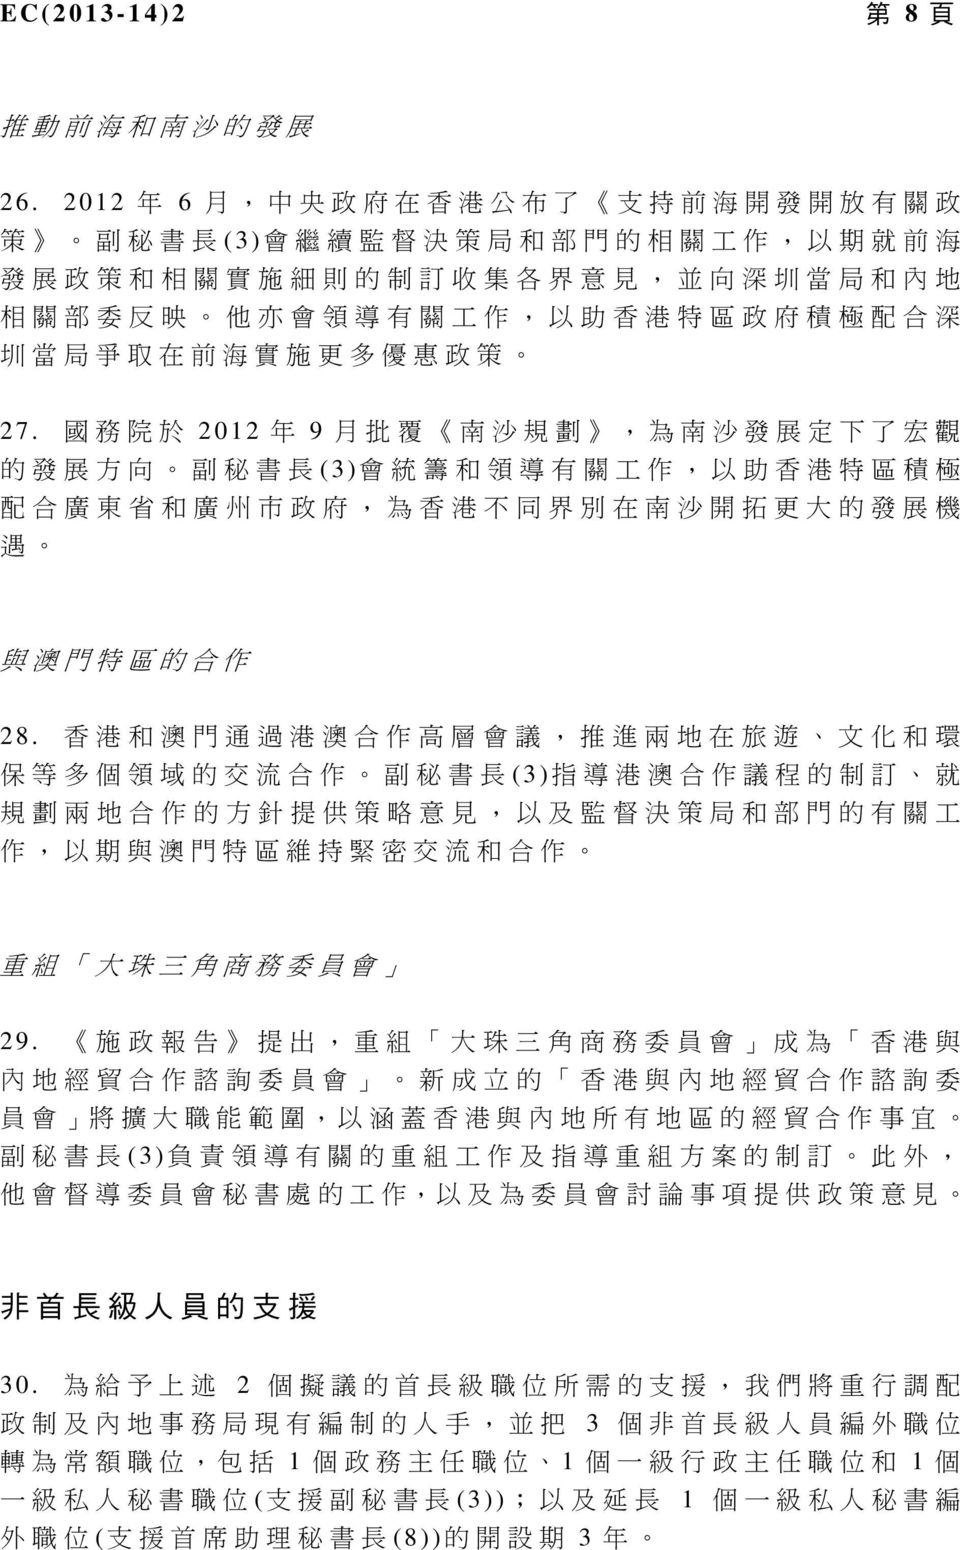 作, 以 助 香 港 特 區 政 府 積 極 配 合 深 圳 當 局 爭 取 在 前 海 實 施 更 多 優 惠 政 策 27.